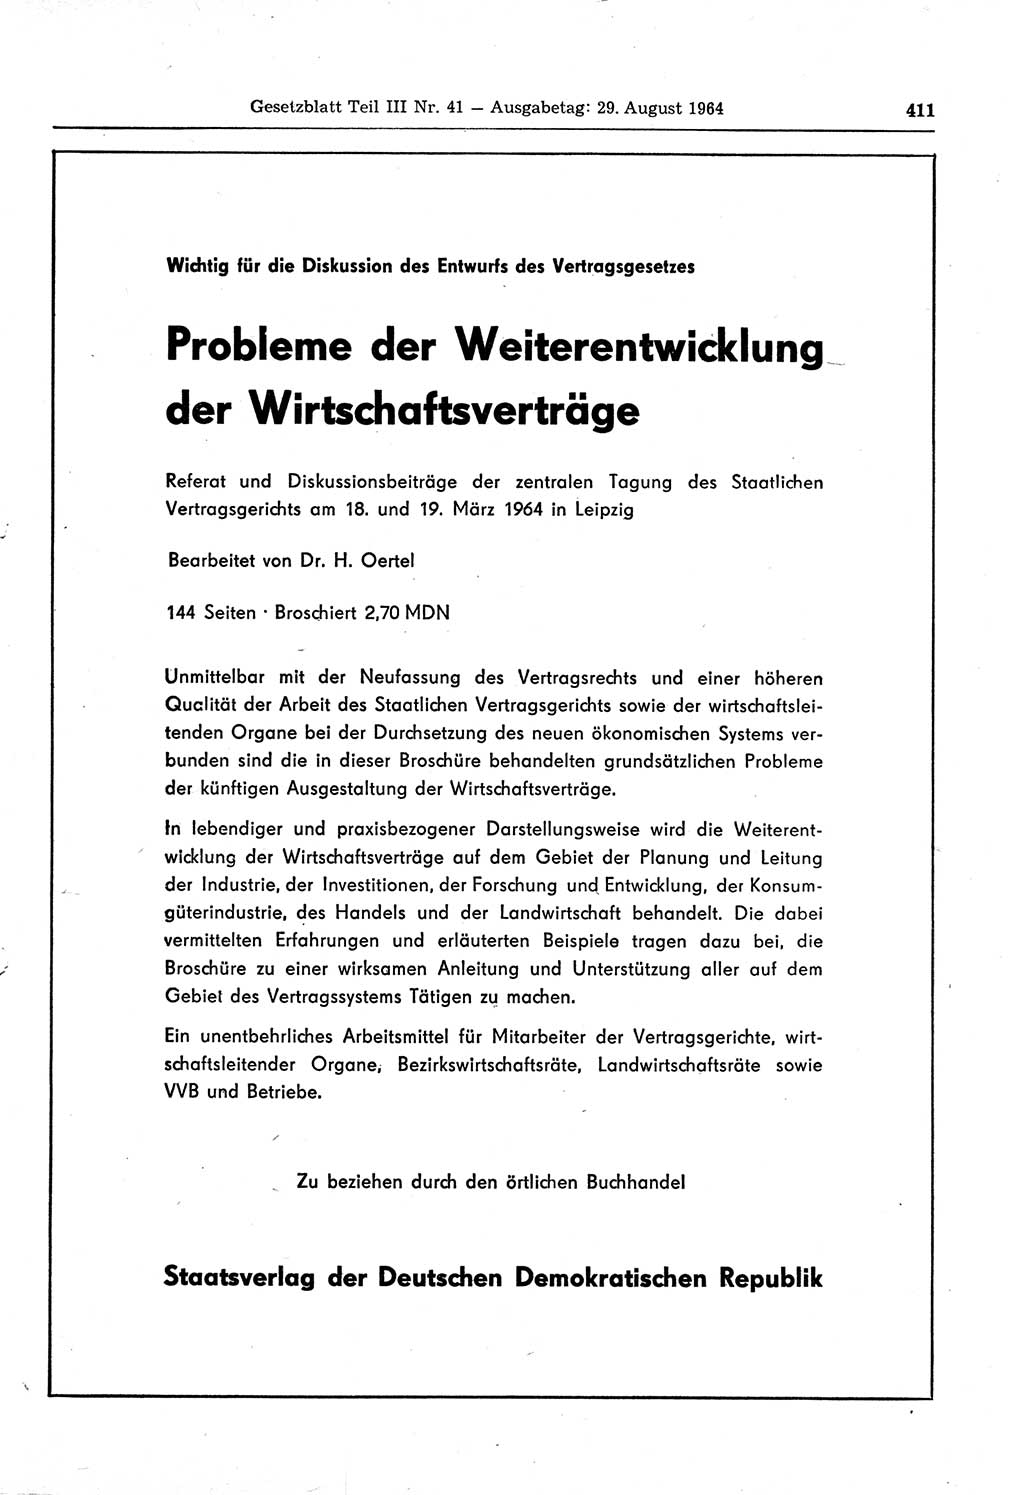 Gesetzblatt (GBl.) der Deutschen Demokratischen Republik (DDR) Teil ⅠⅠⅠ 1964, Seite 411 (GBl. DDR ⅠⅠⅠ 1964, S. 411)